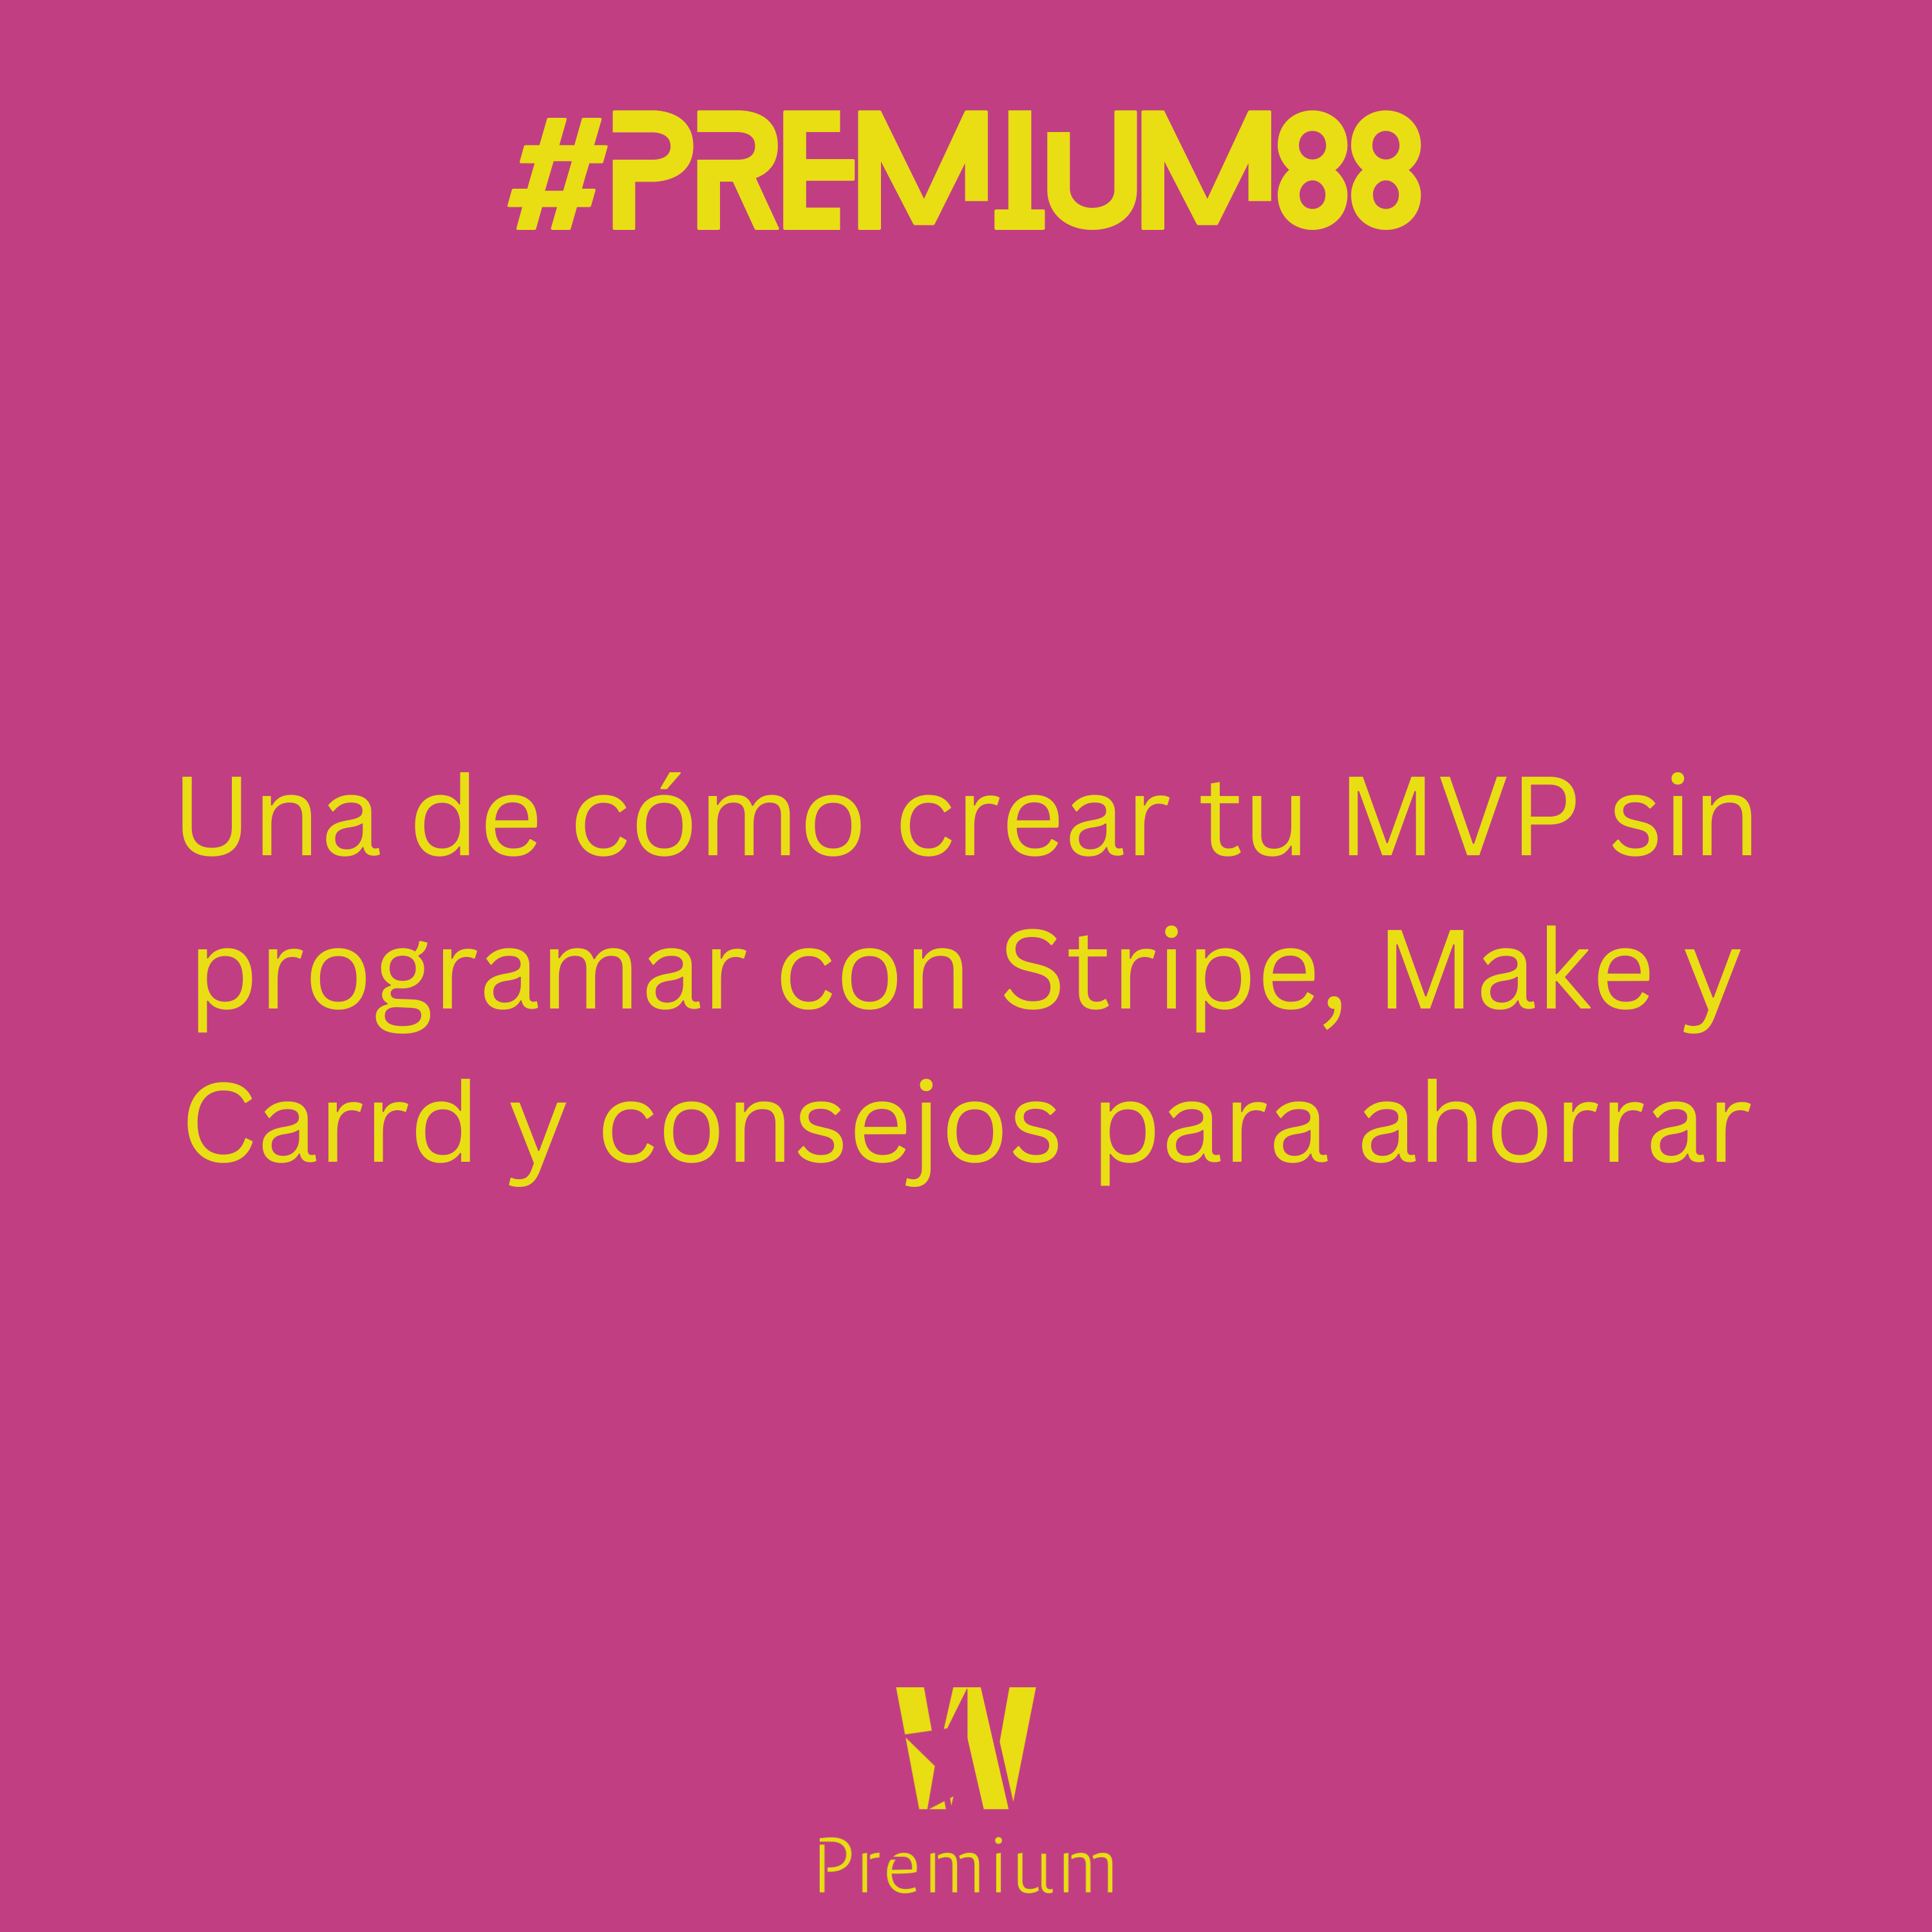 #Premium88 - Una de cómo crear tu MVP sin programar con Stripe, Make y Carrd y consejos para ahorrar